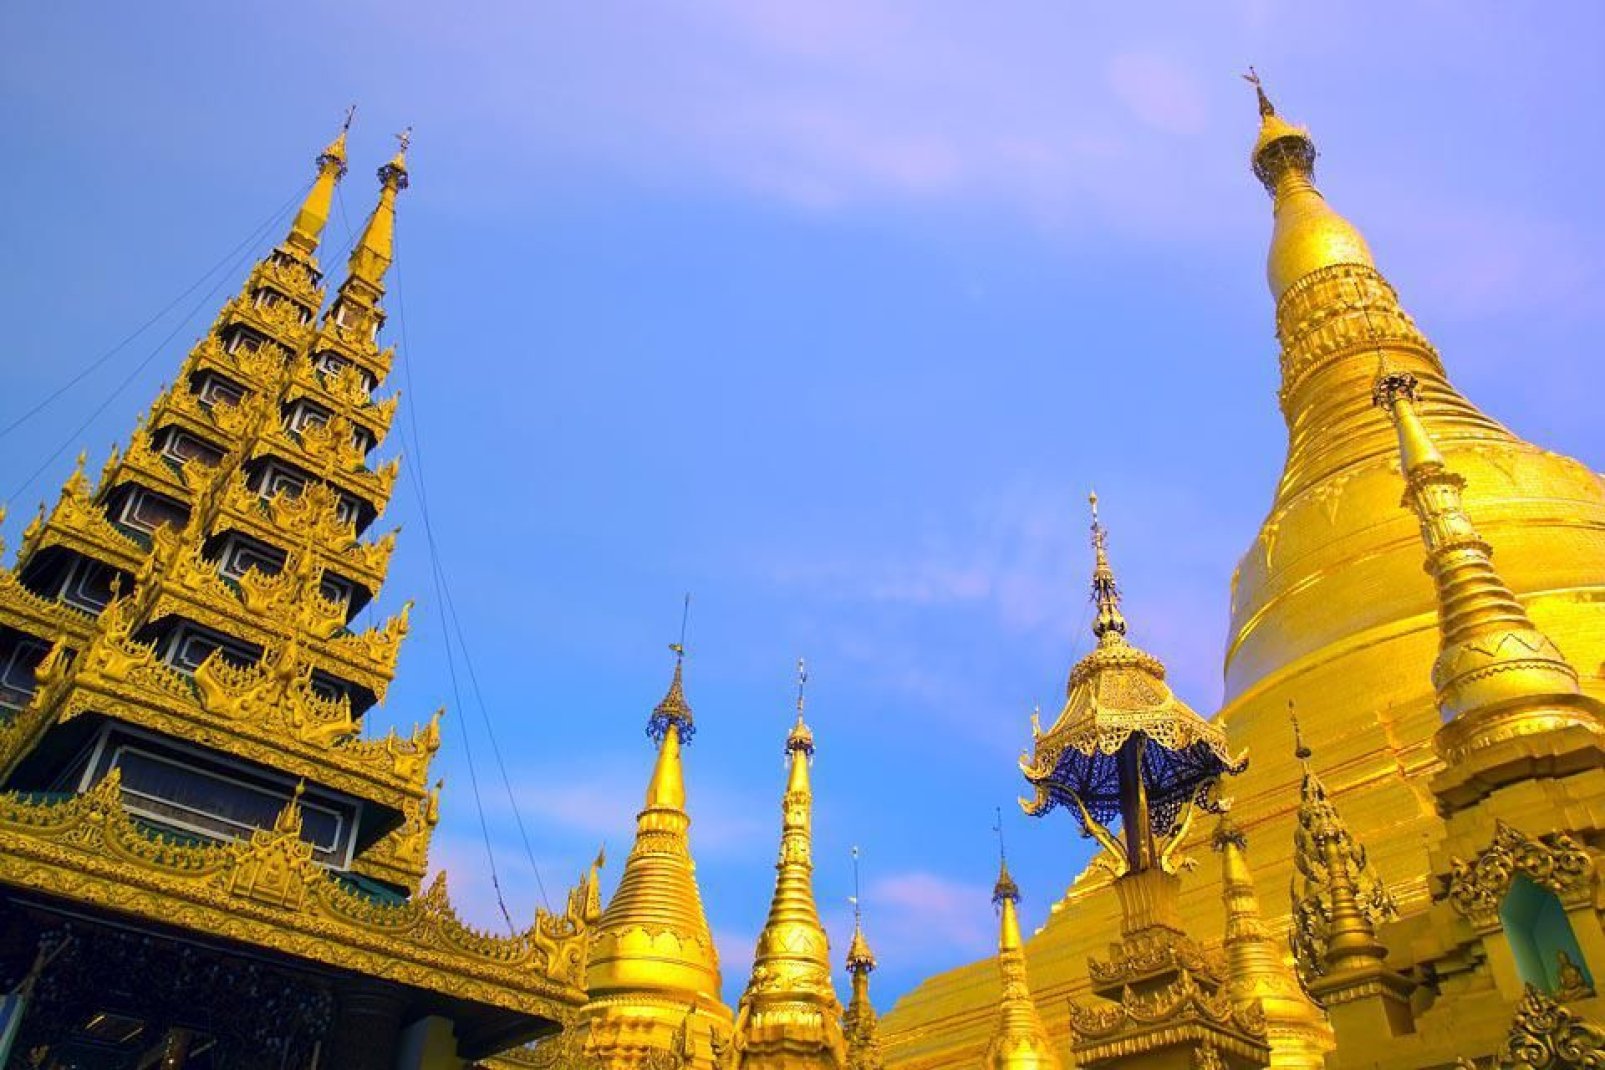 Alta 112 m, ha la cima decorata con una sfera d'oro tempestata di oltre 2500 pietre preziose.